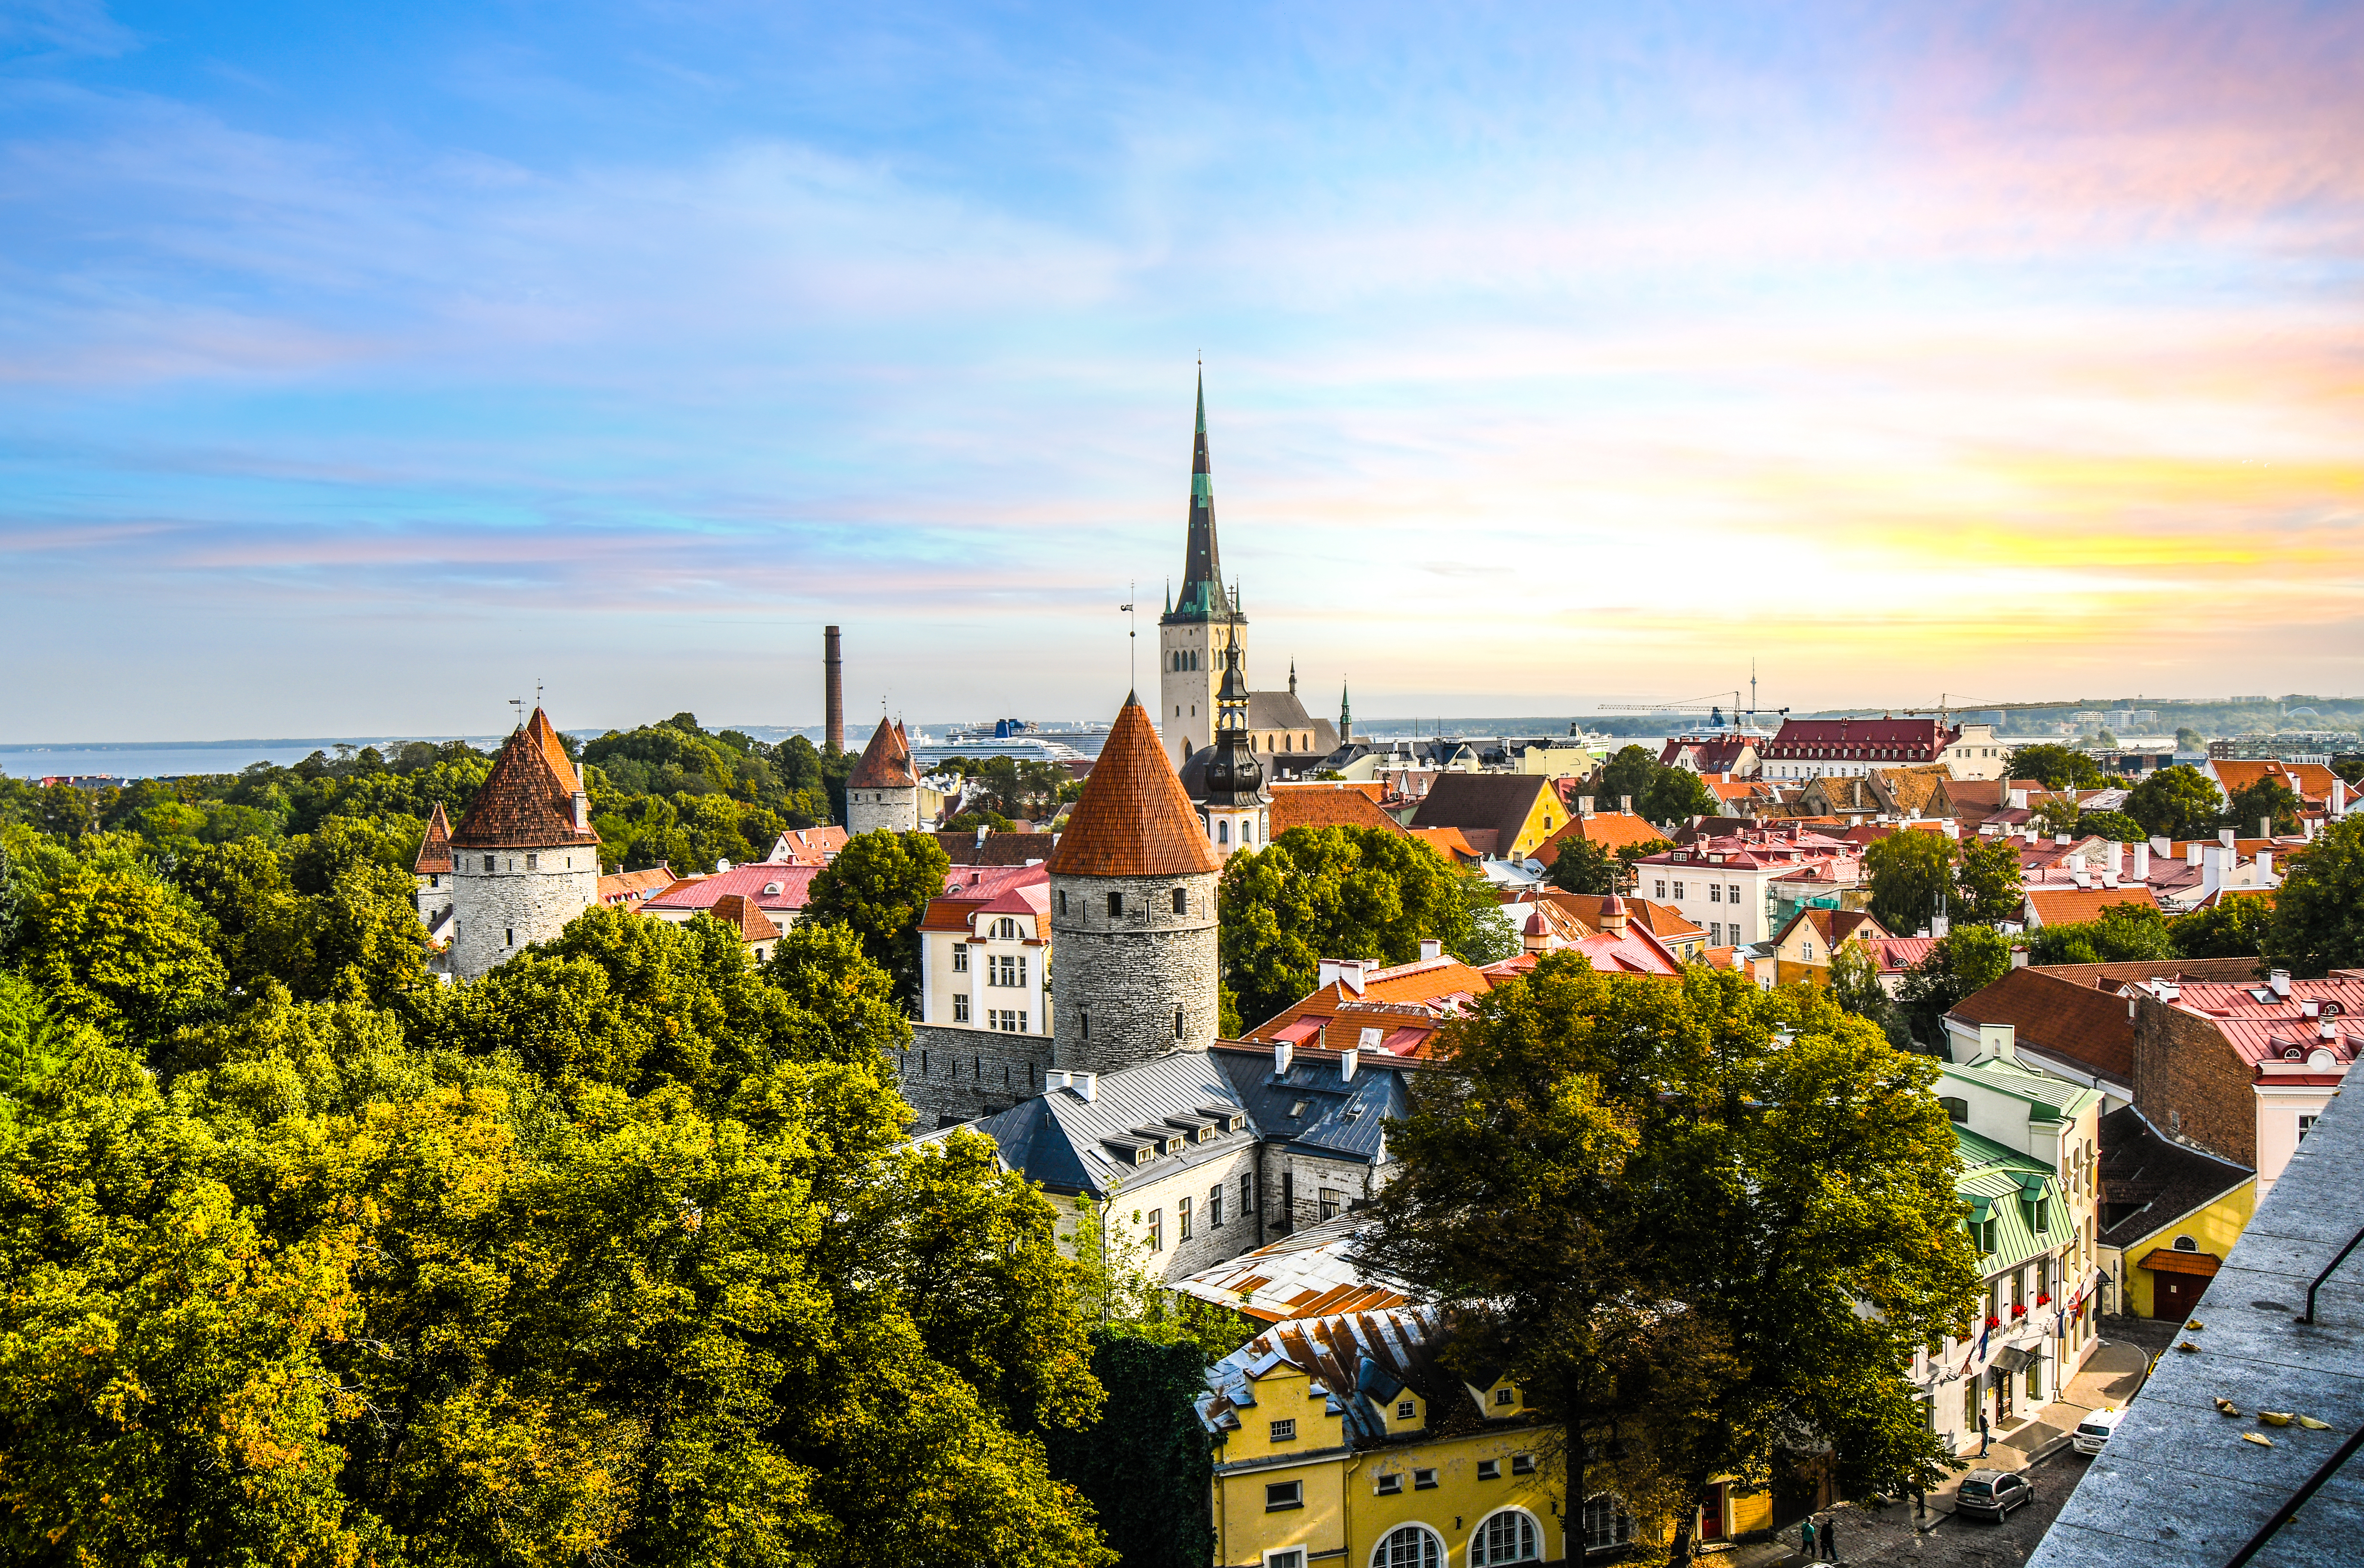 Таллинн, столица Эстонии, ВНЖ которой могут получить иностранцы